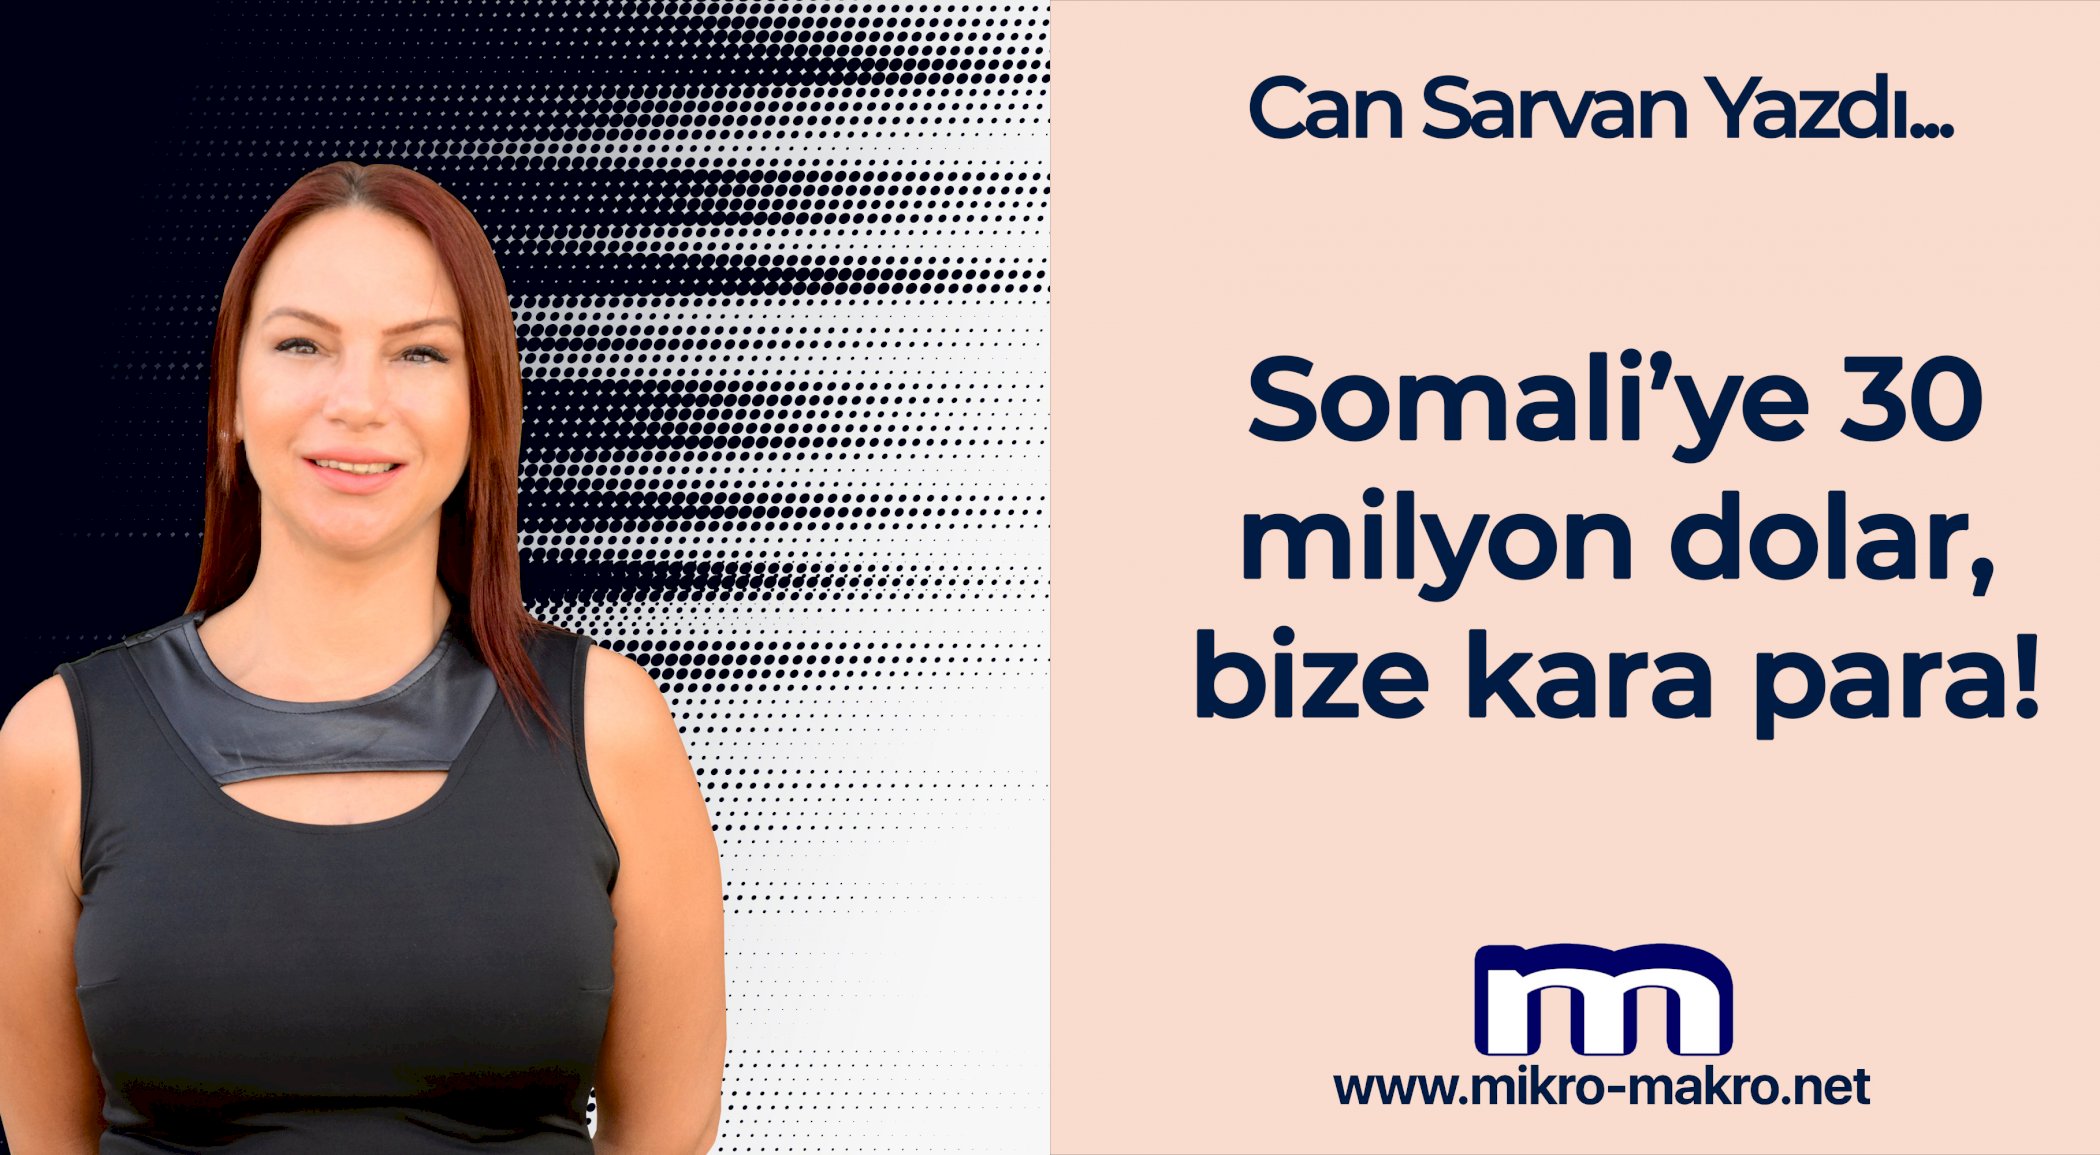 https://mail.mikro-makro.net/somaliye-30-milyon-dolar-bize-kara-para